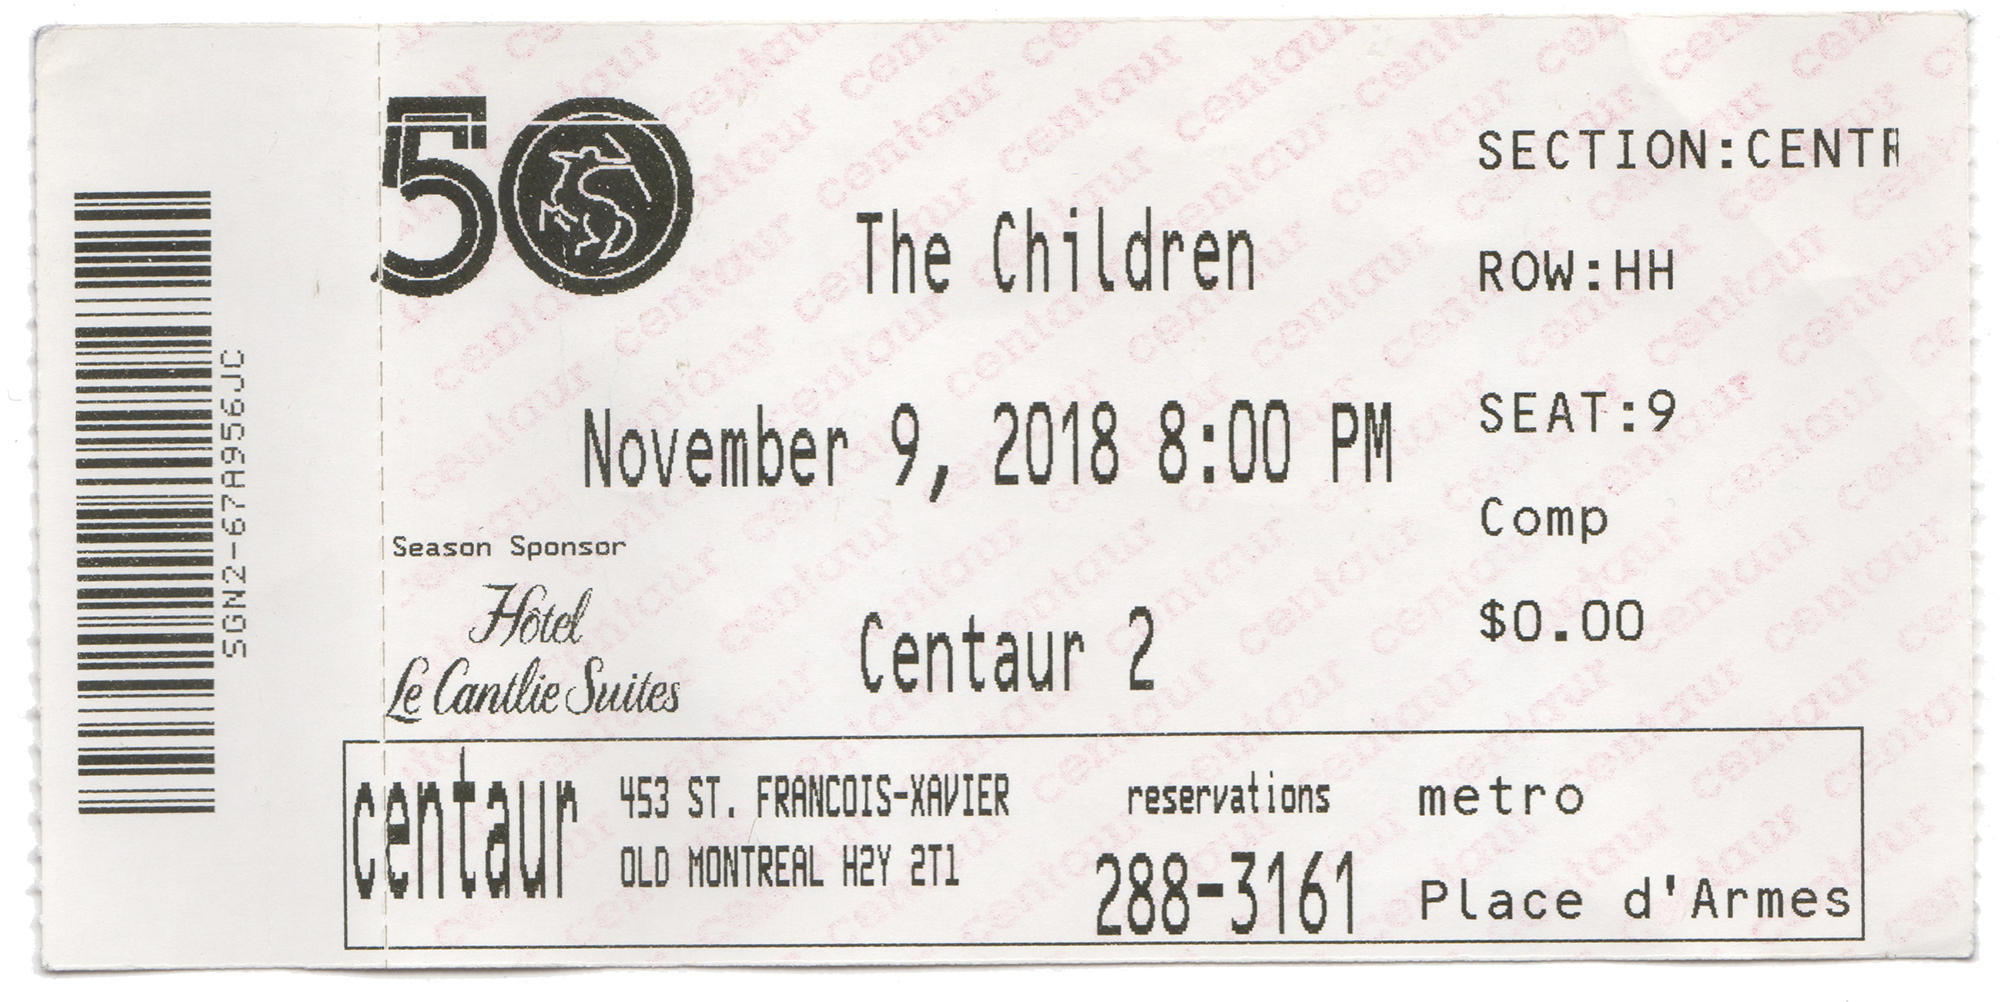 The Children, Centaur Theatre